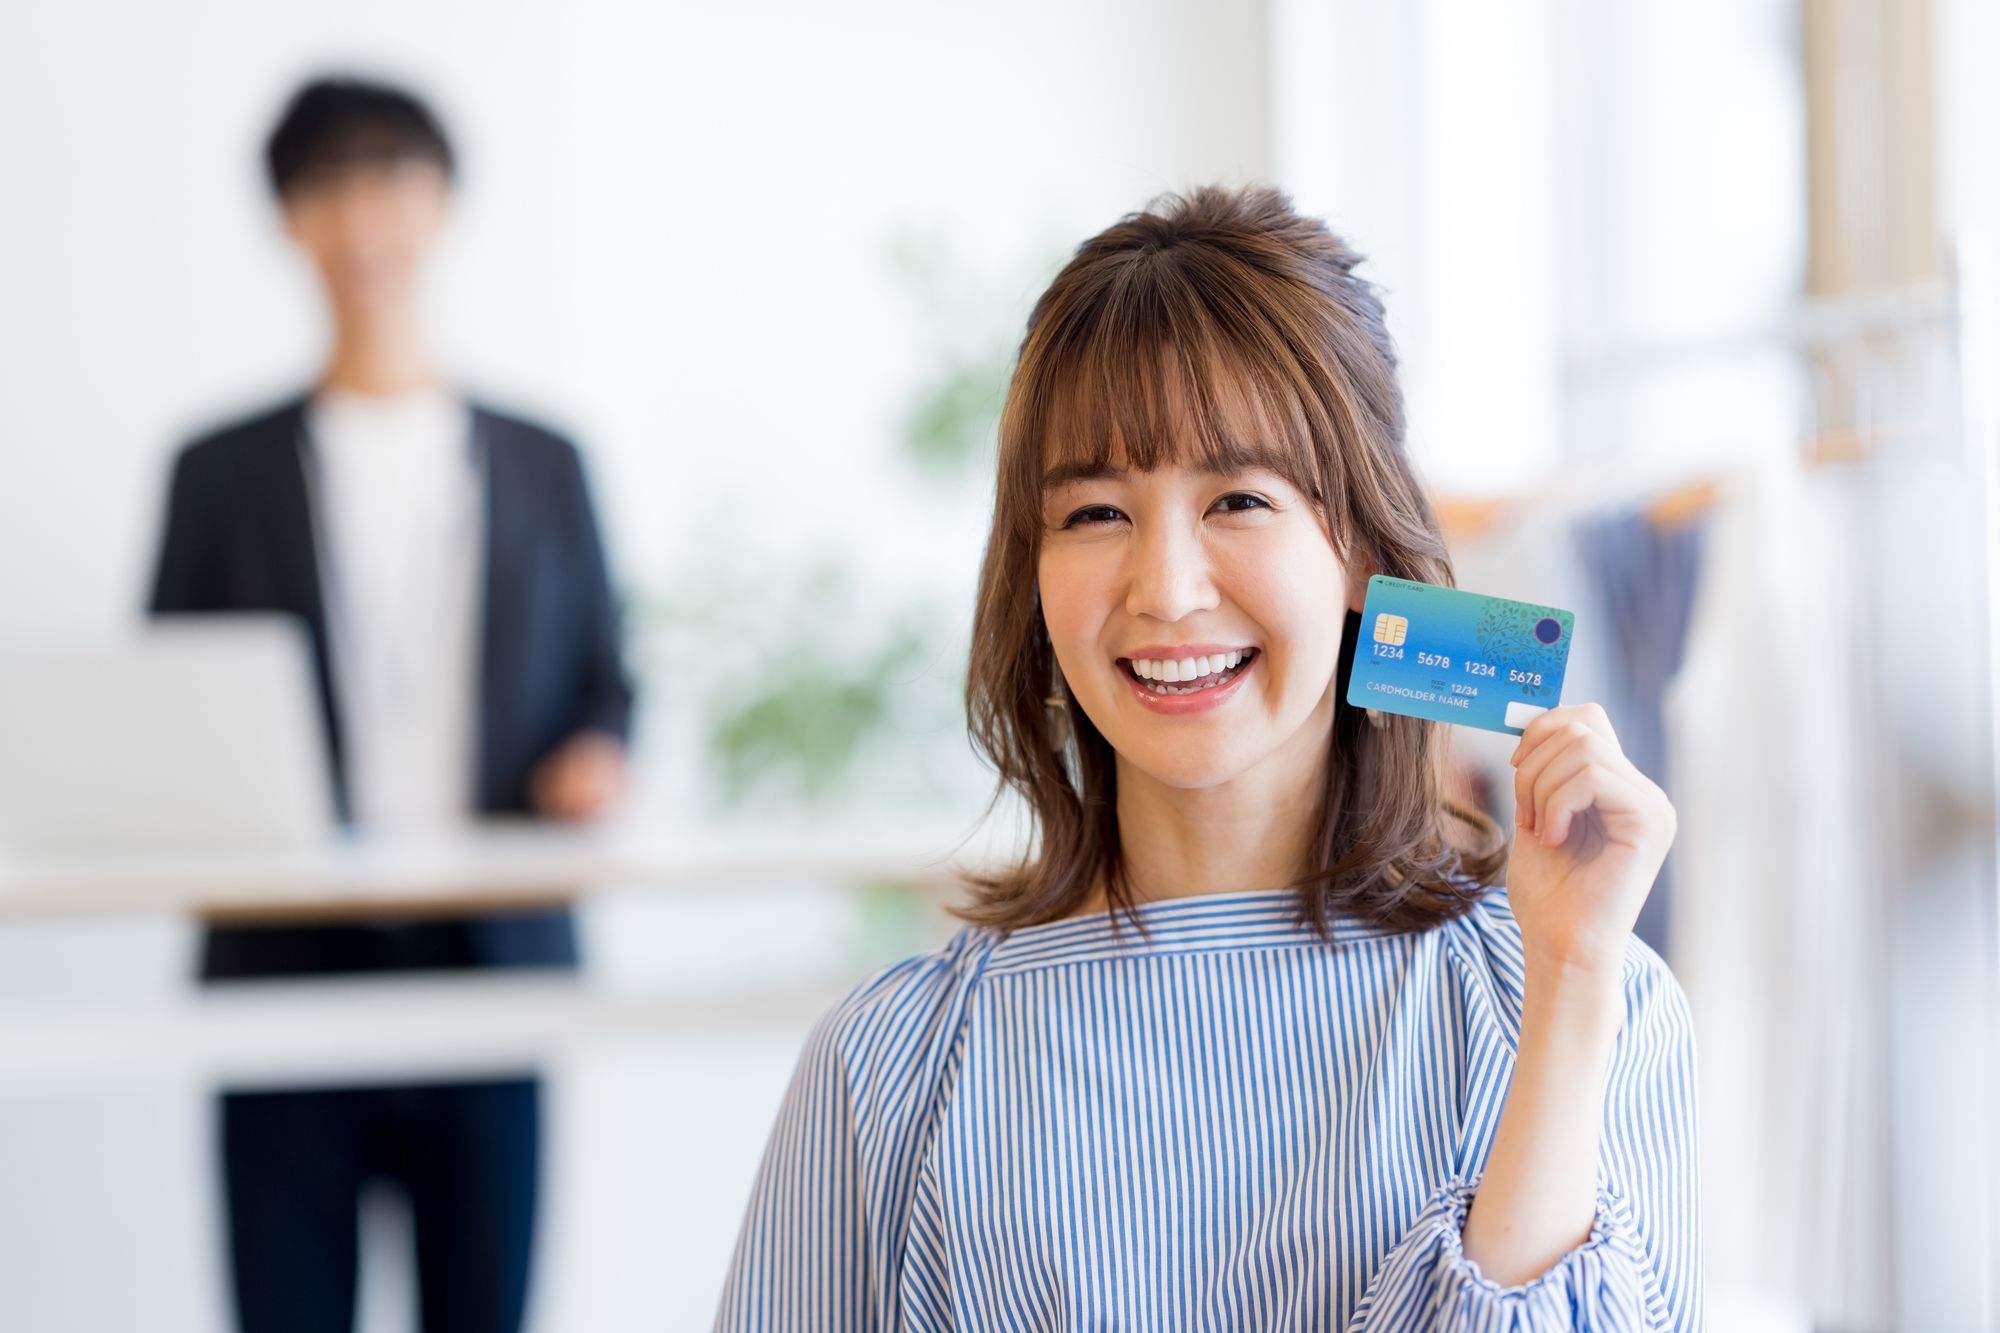 後ろでパソコンを操作する男性と手前でクレジットカードを持ち微笑む女性